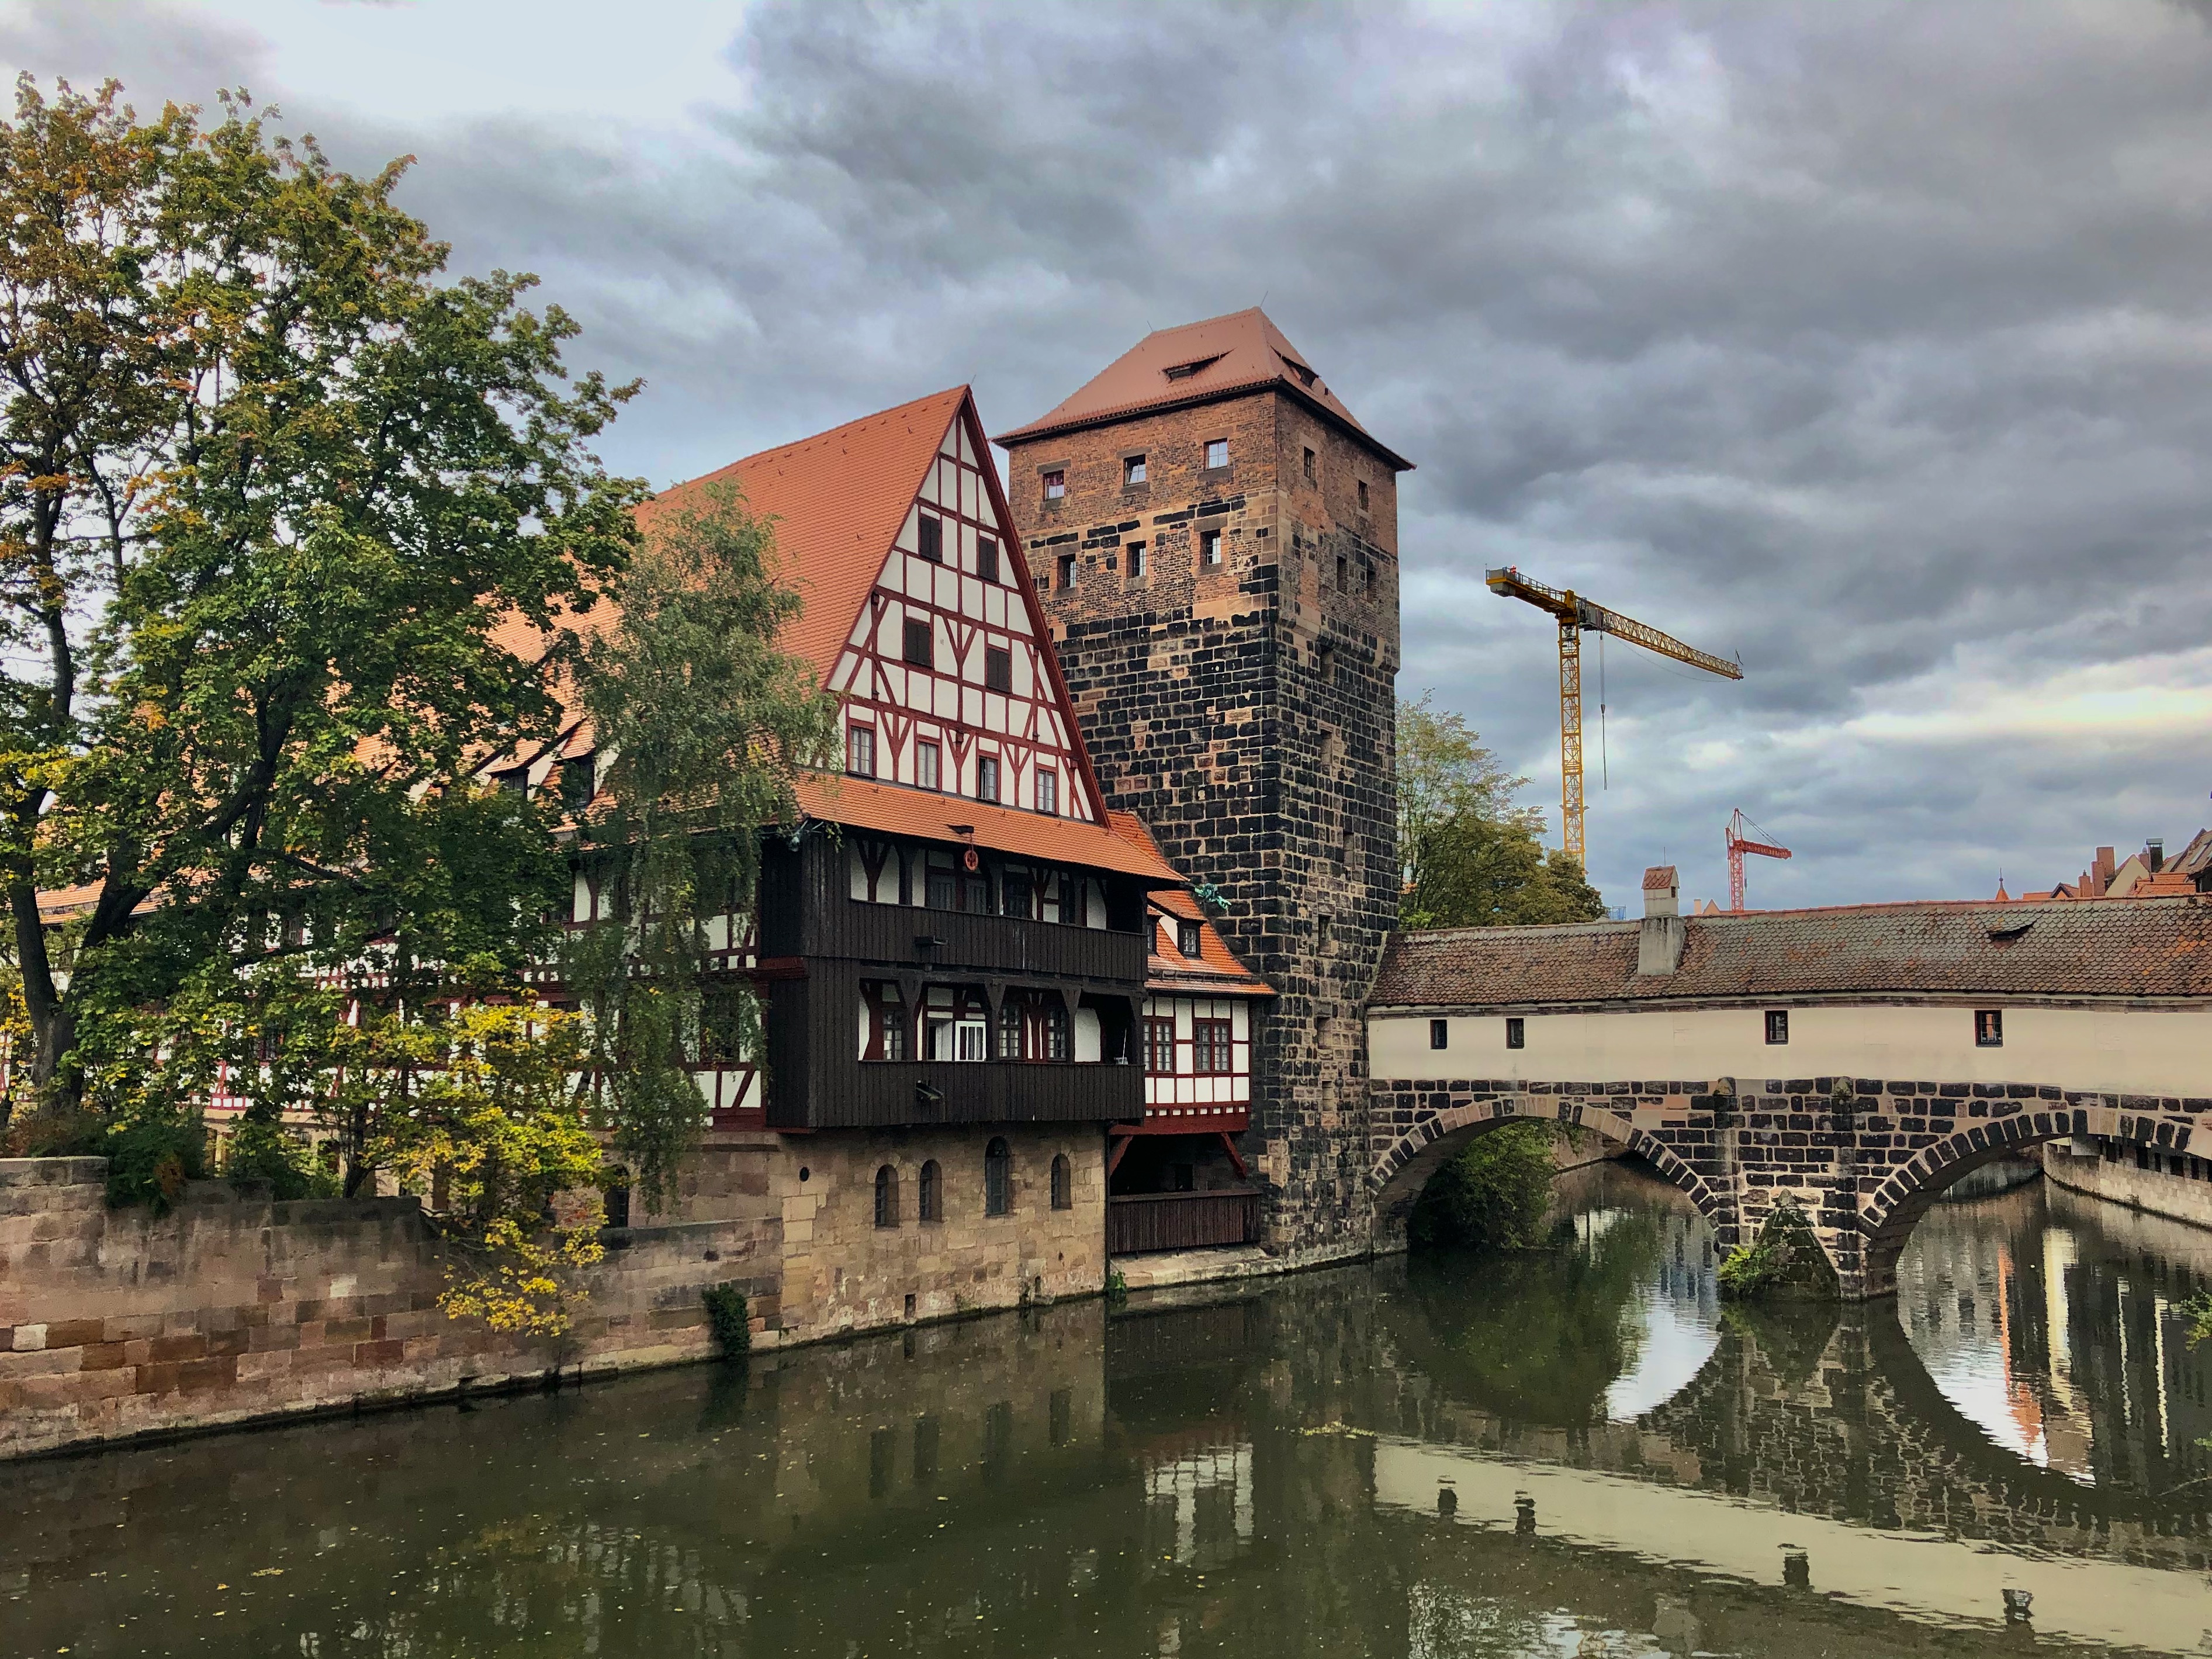 Nuremberg, Germany: A Long Weekend in Bavaria